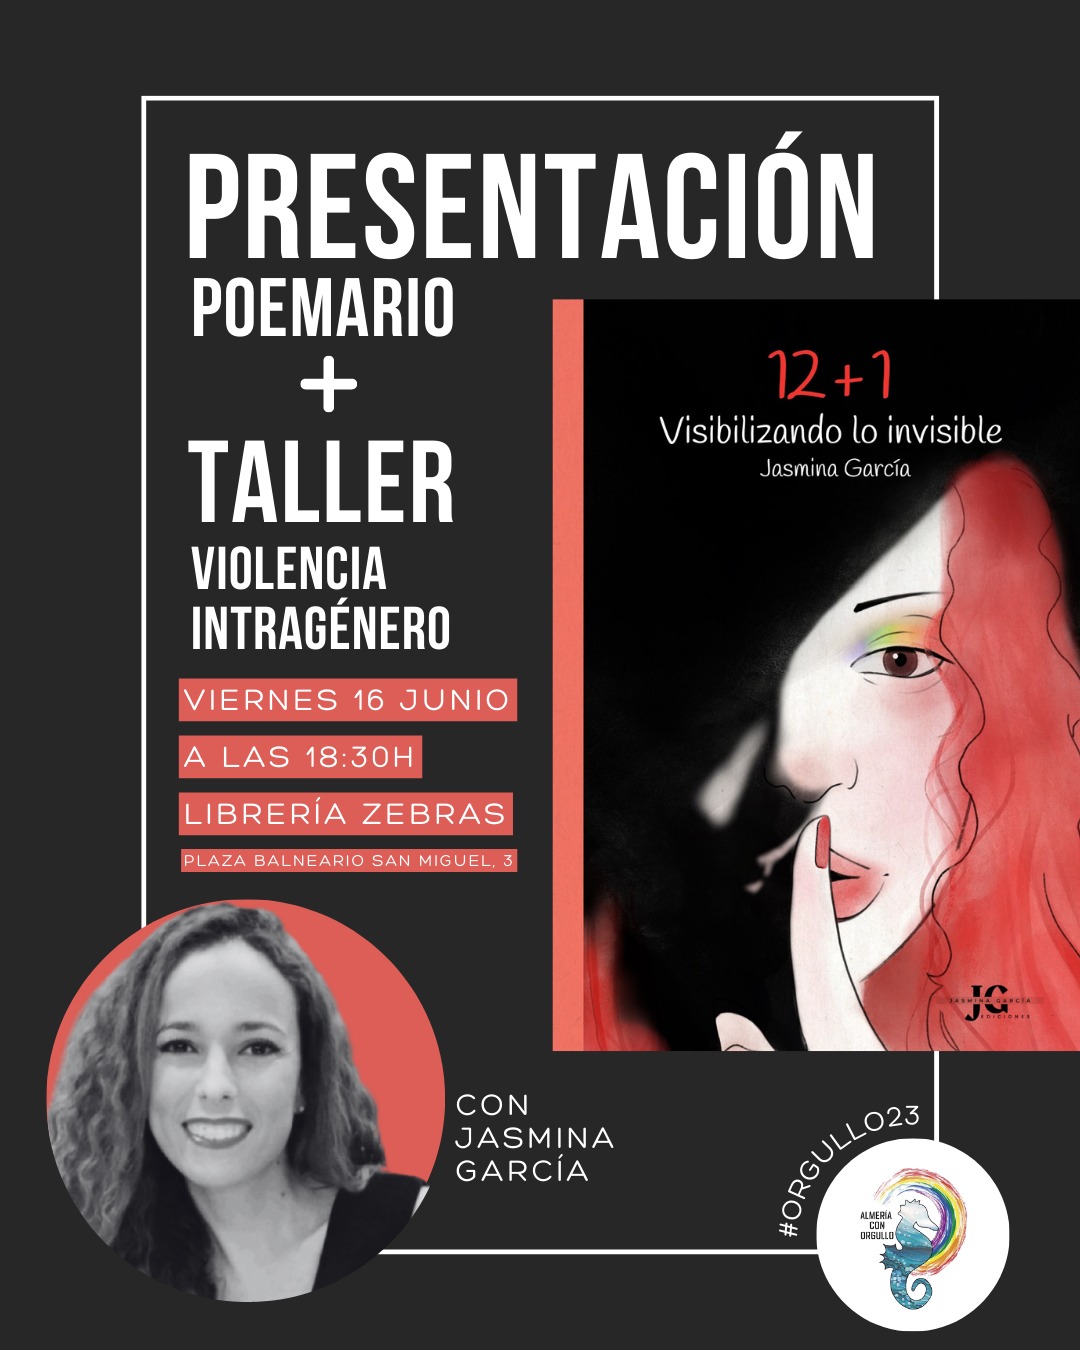 Cartel Preseantacion Poemario + Taller Violencia Intragenero